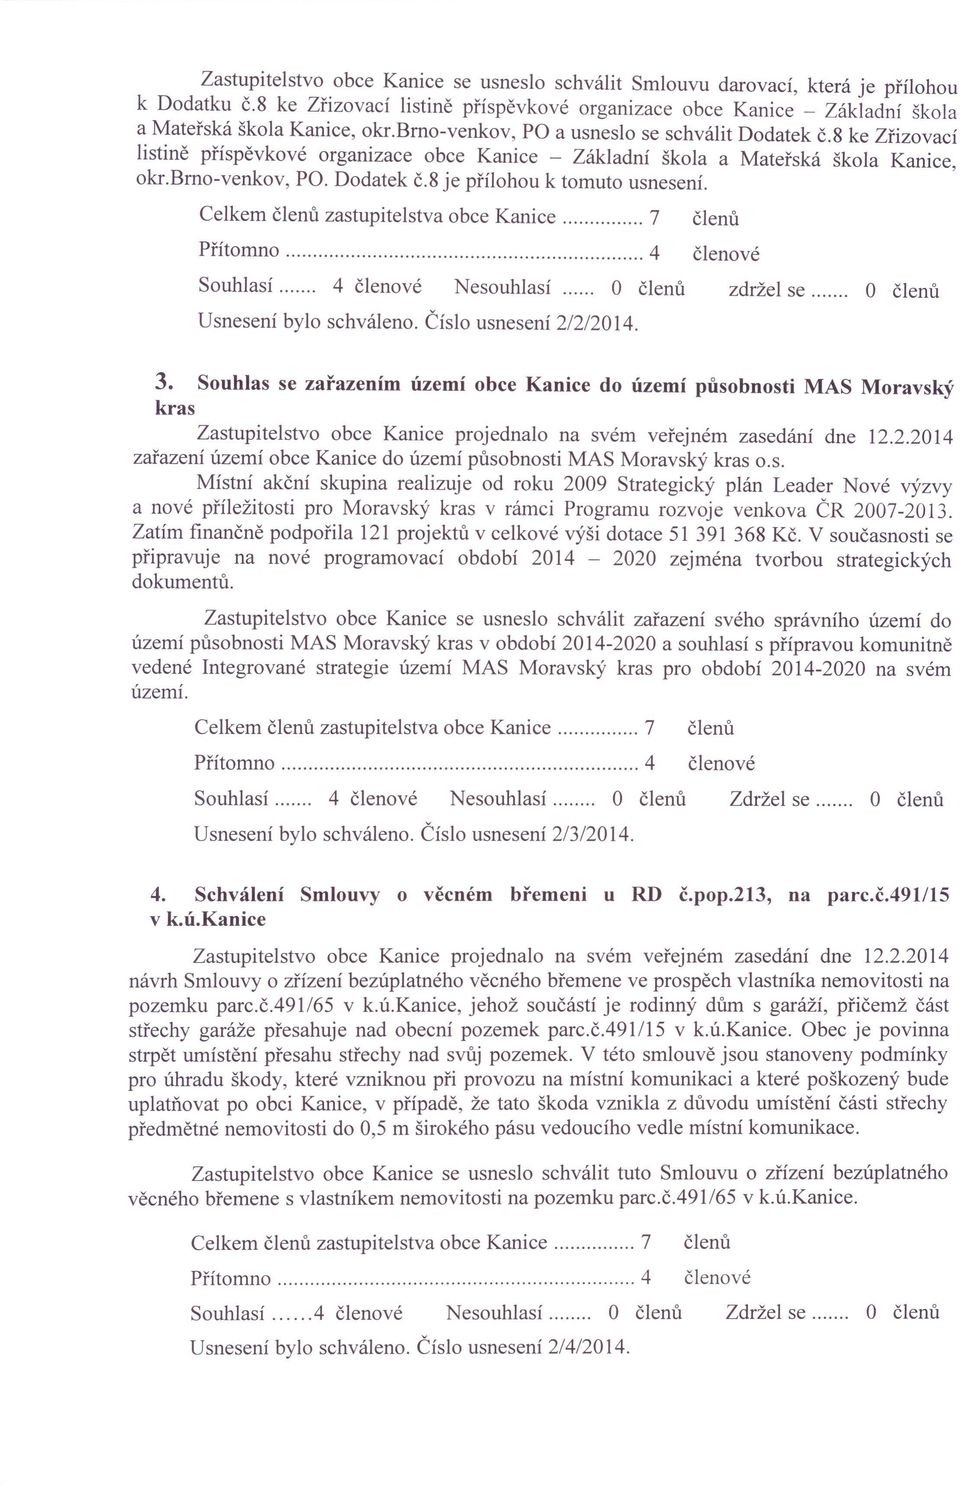 ' Celkem zastupitelstva obce Kanice 7 Souhlasí 4 Nesouhlasí.. O Usnesení bylo schváleno. Číslo usnesení 2/2/2014. zdržel se O 3.